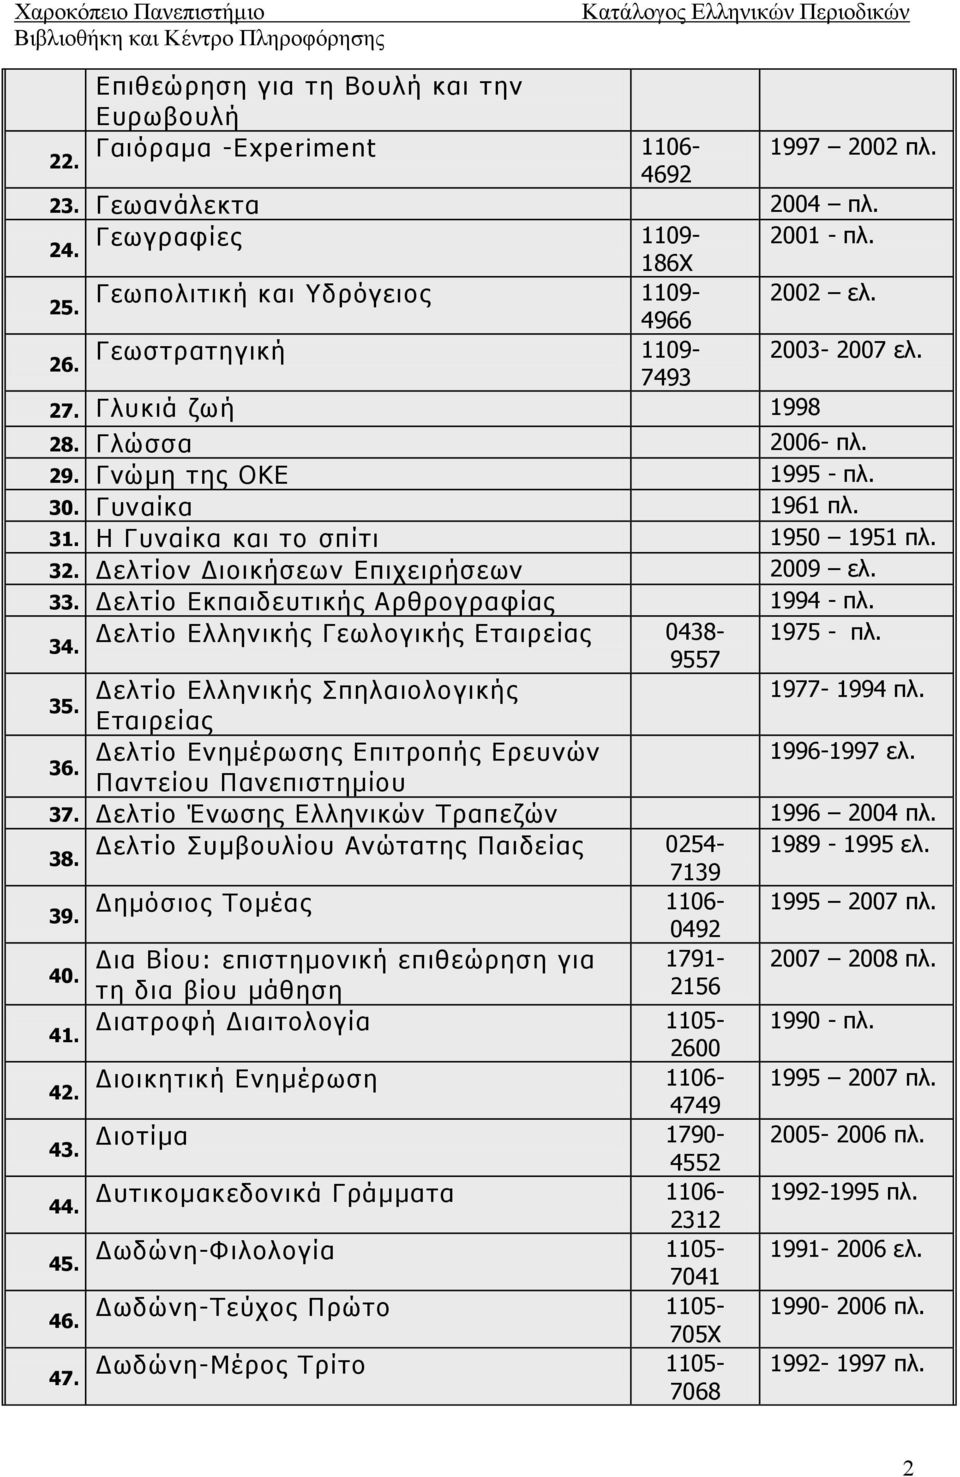 Δελτίον Διοικήσεων Επιχειρήσεων 2009 ελ. 33. Δελτίο Εκπαιδευτικής Αρθρογραφίας 1994 - πλ. Δελτίο Ελληνικής Γεωλογικής Εταιρείας 0438-1975 - πλ. 34. 9557 Δελτίο Ελληνικής Σπηλαιολογικής 1977-1994 πλ.